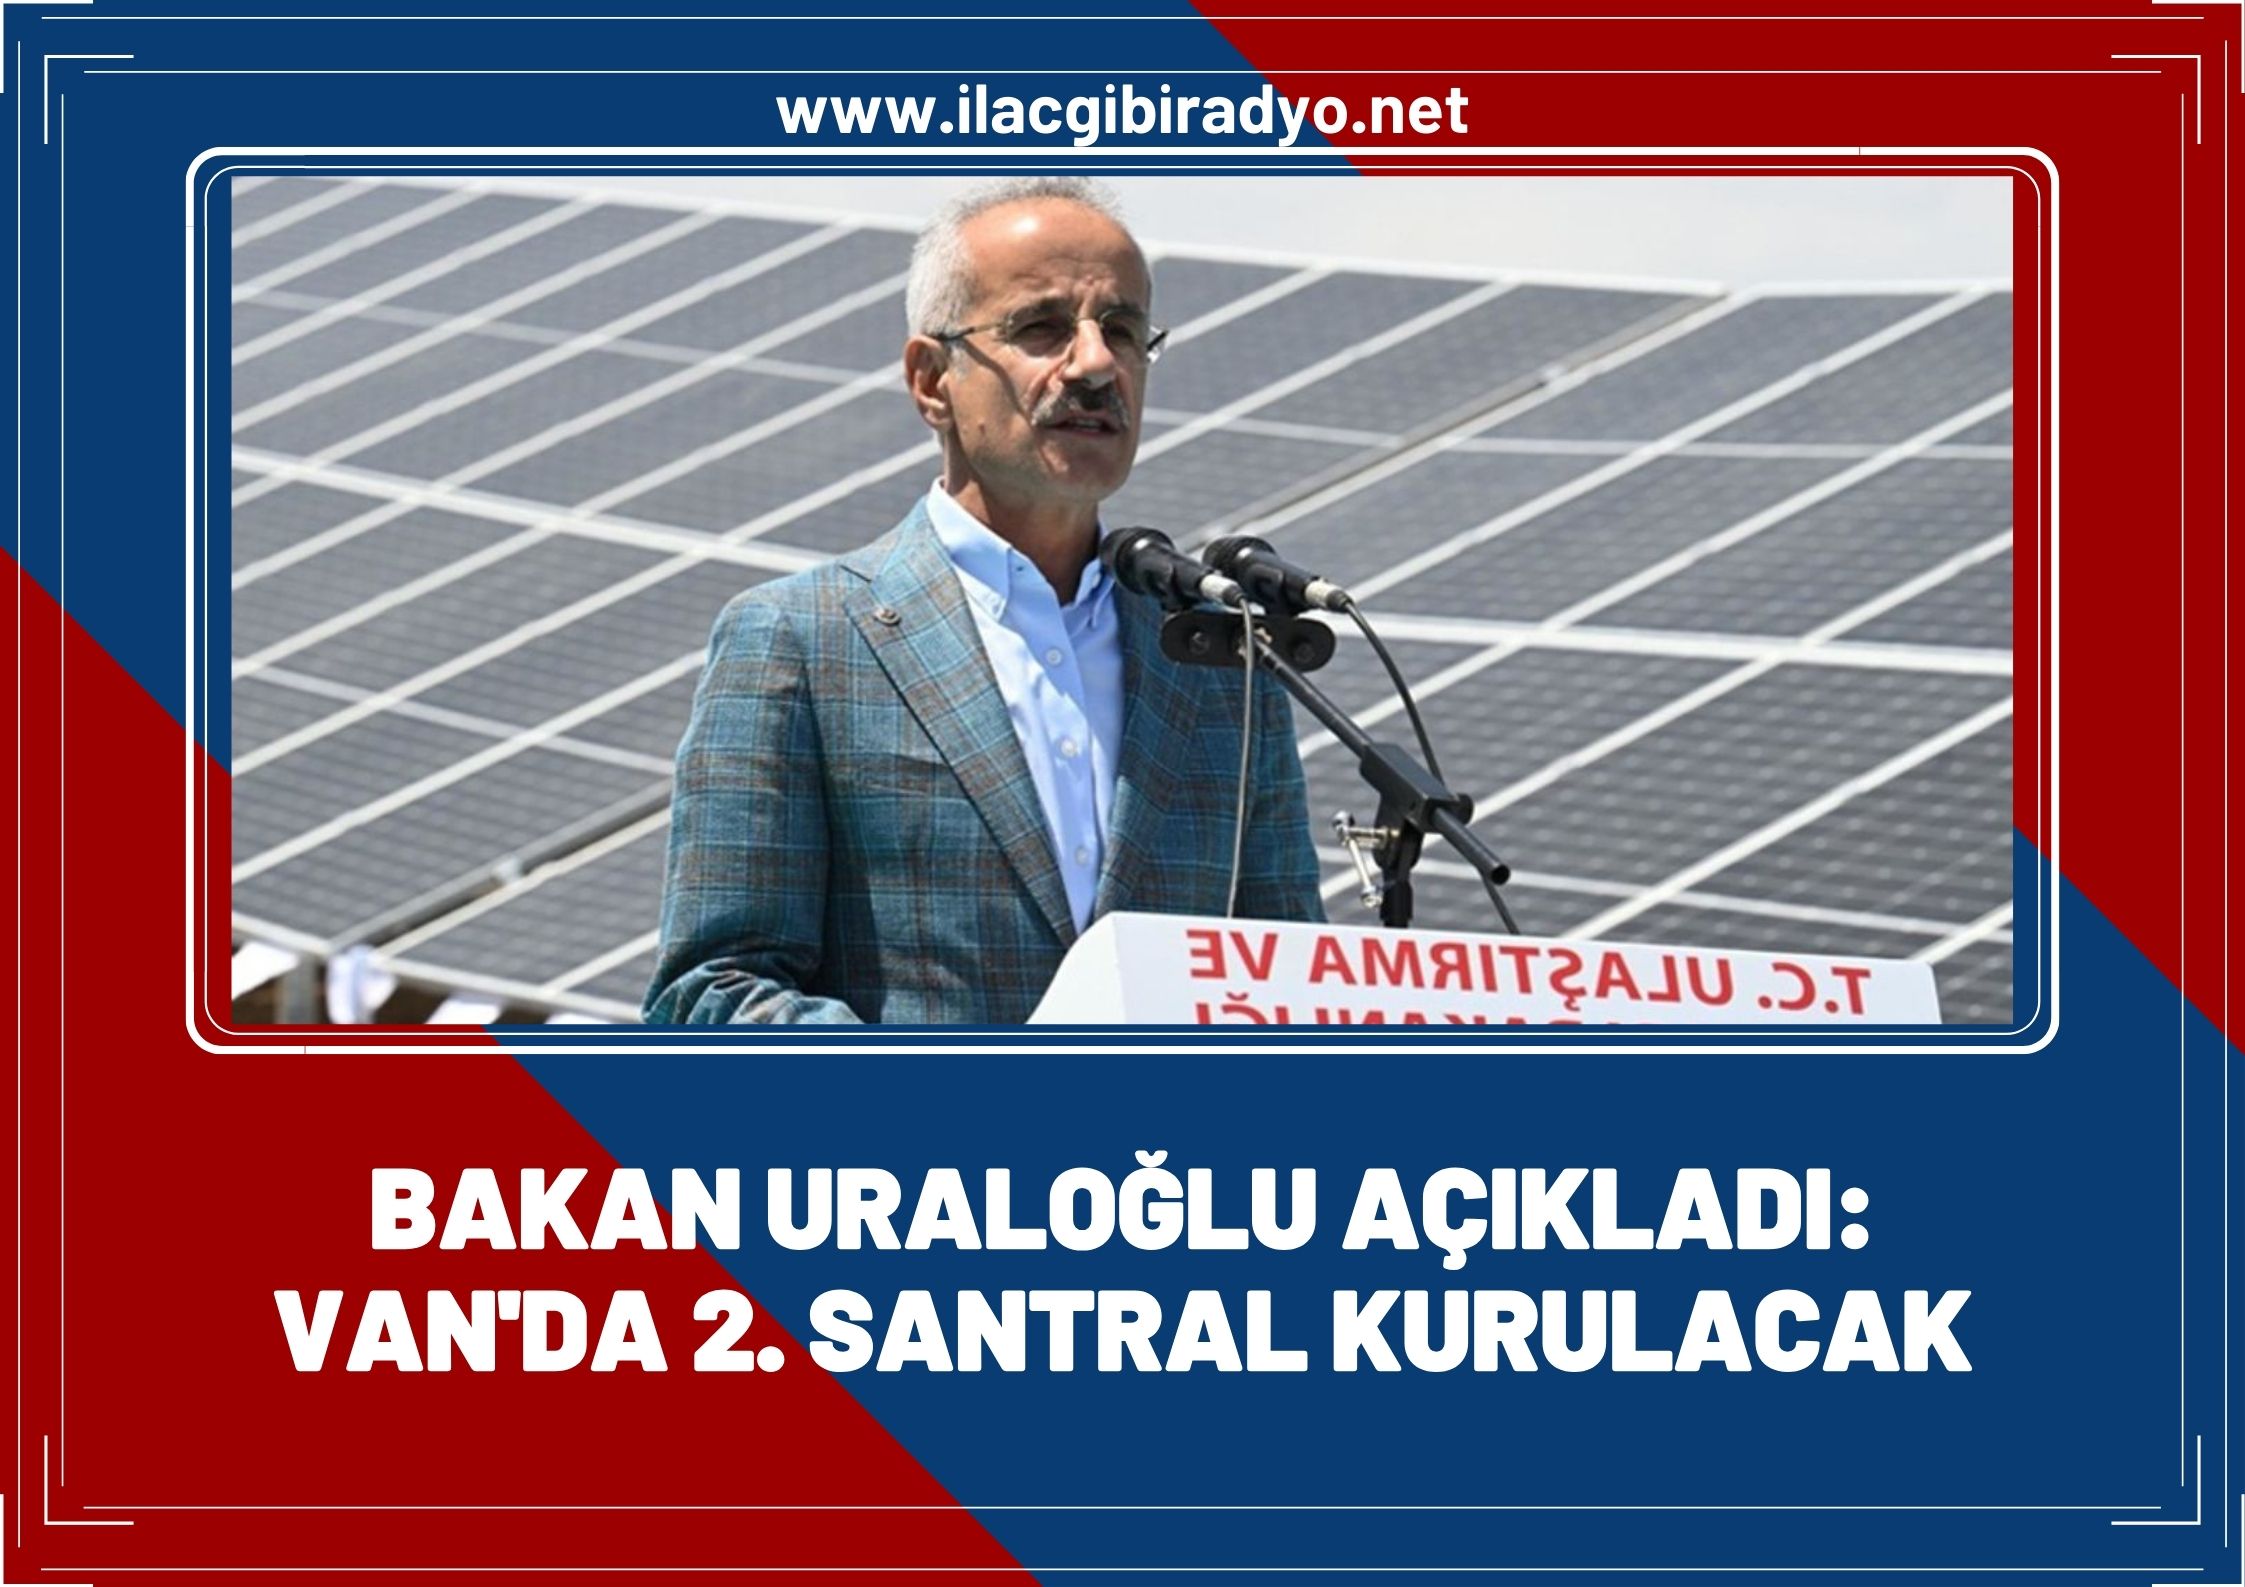 Bakan Uraloğlu açıkladı: Van'da 2. santral kurulacak